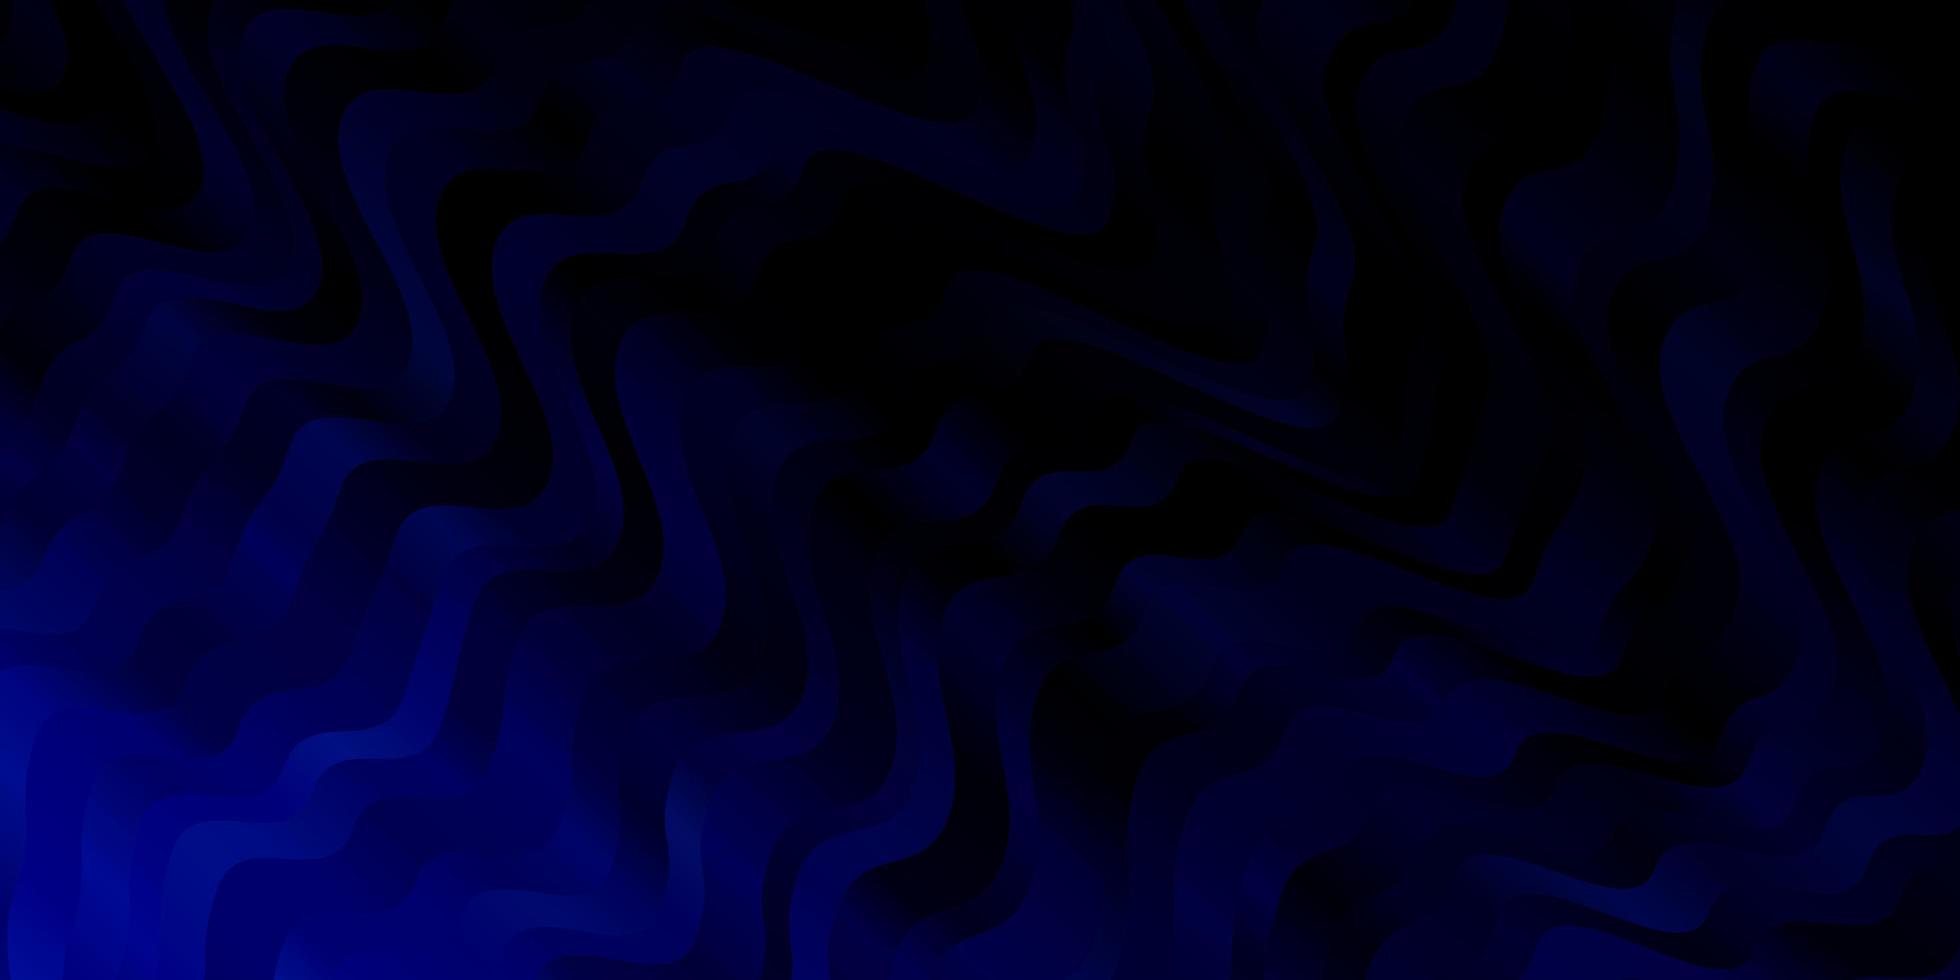 sfondo vettoriale blu scuro con linee ironiche.